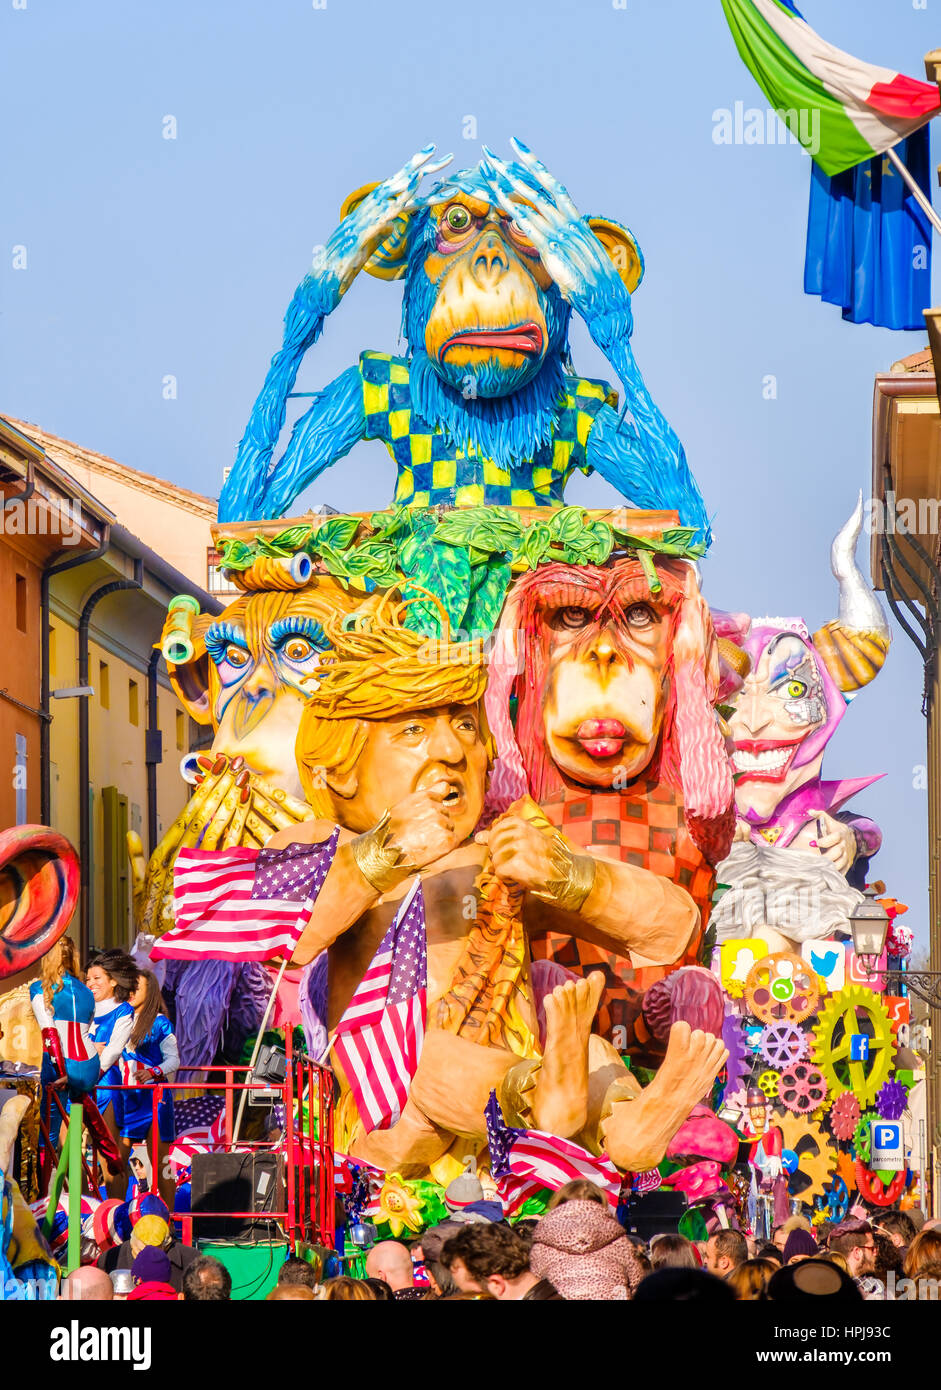 Cento, Italie, le 19 février 2017 : Carnaval de Cento, un char satirique montre l'atout de Donald comme Tarzan entre singes Banque D'Images